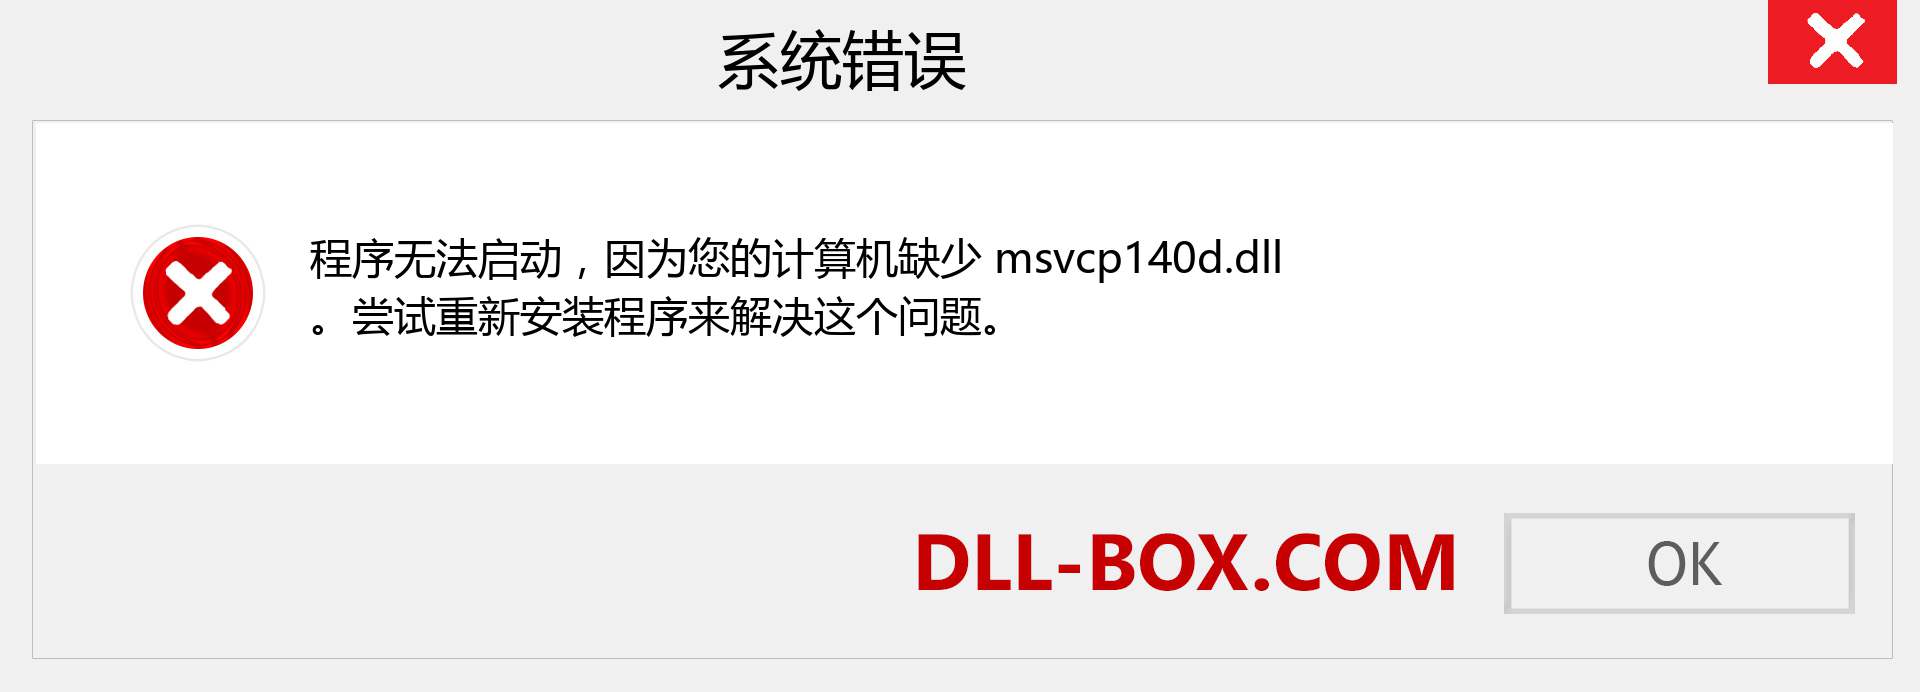 msvcp140d.dll 文件丢失？。 适用于 Windows 7、8、10 的下载 - 修复 Windows、照片、图像上的 msvcp140d dll 丢失错误